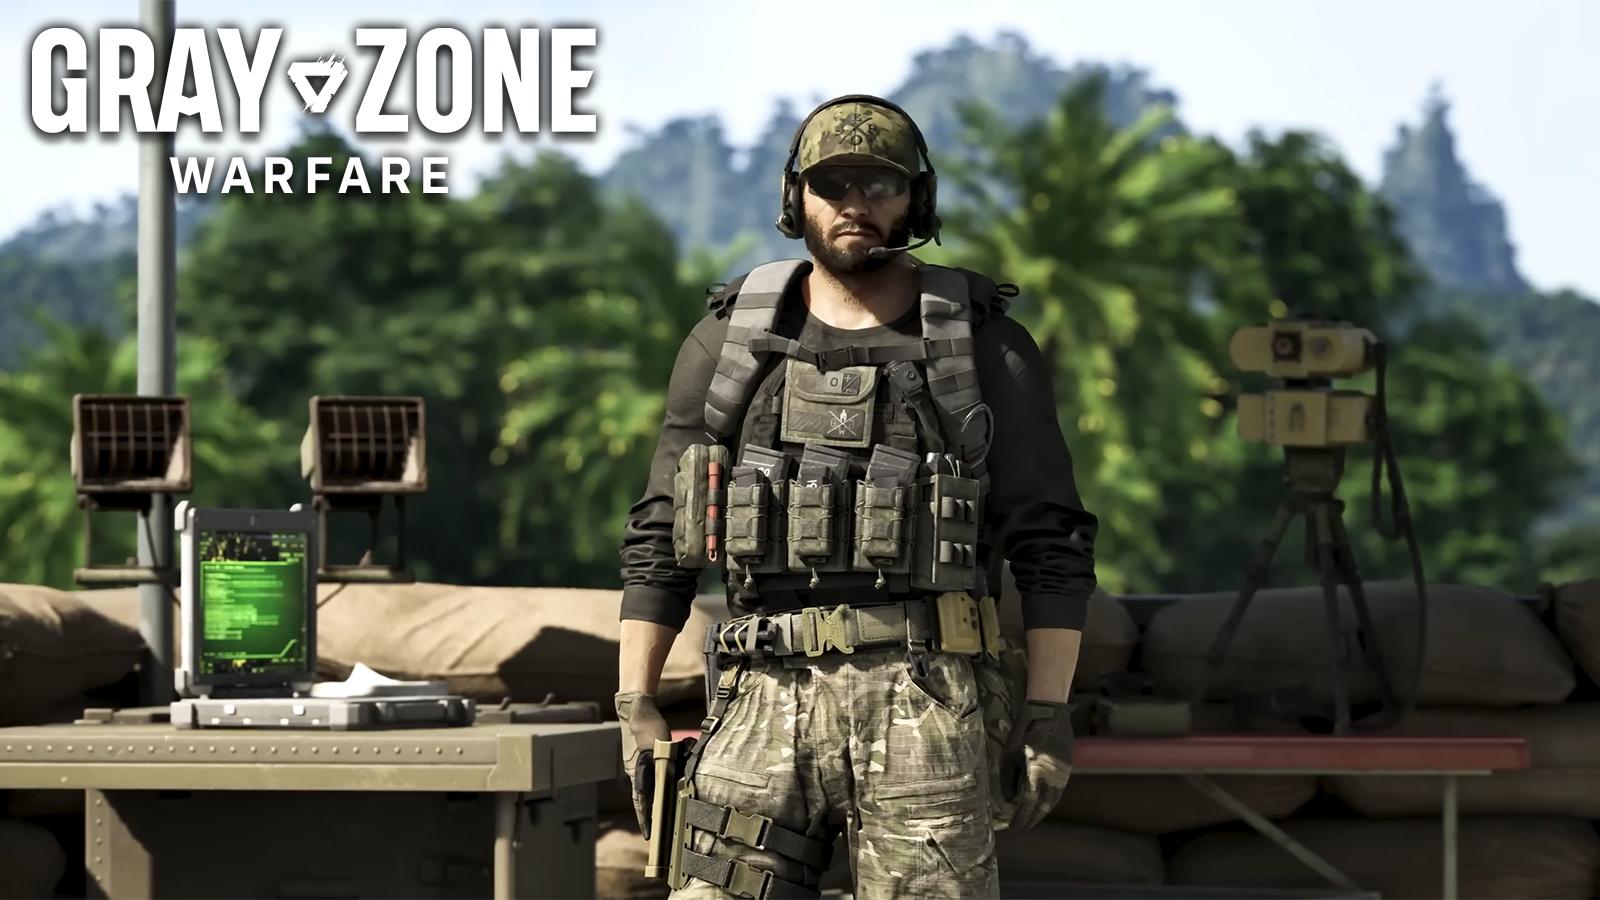 Personnage de Gray Zone Warfare avec un gilet pare-balles